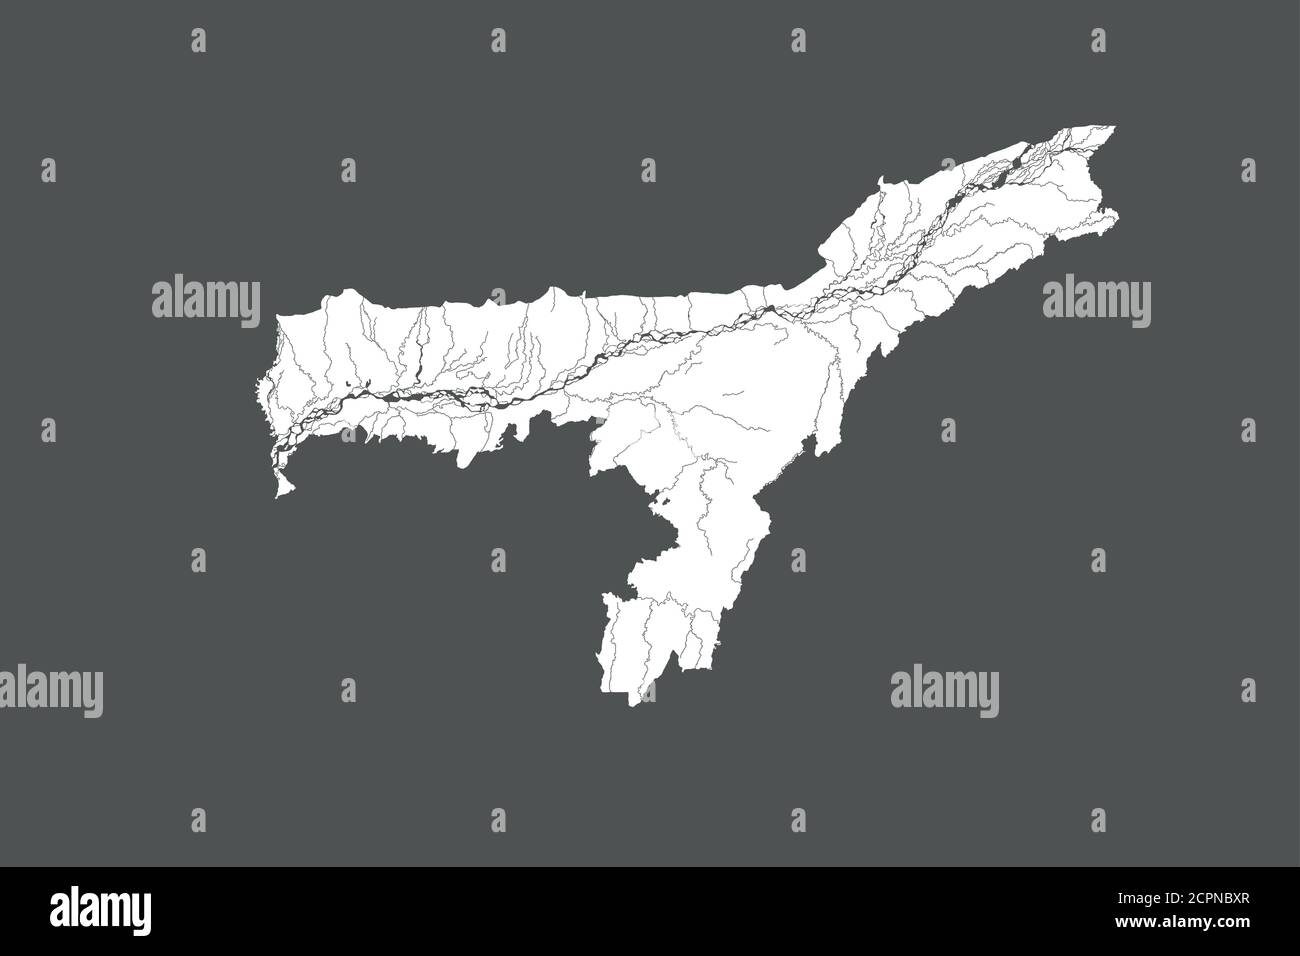 1,099 Assam Map Images, Stock Photos, 3D objects, & Vectors | Shutterstock-saigonsouth.com.vn